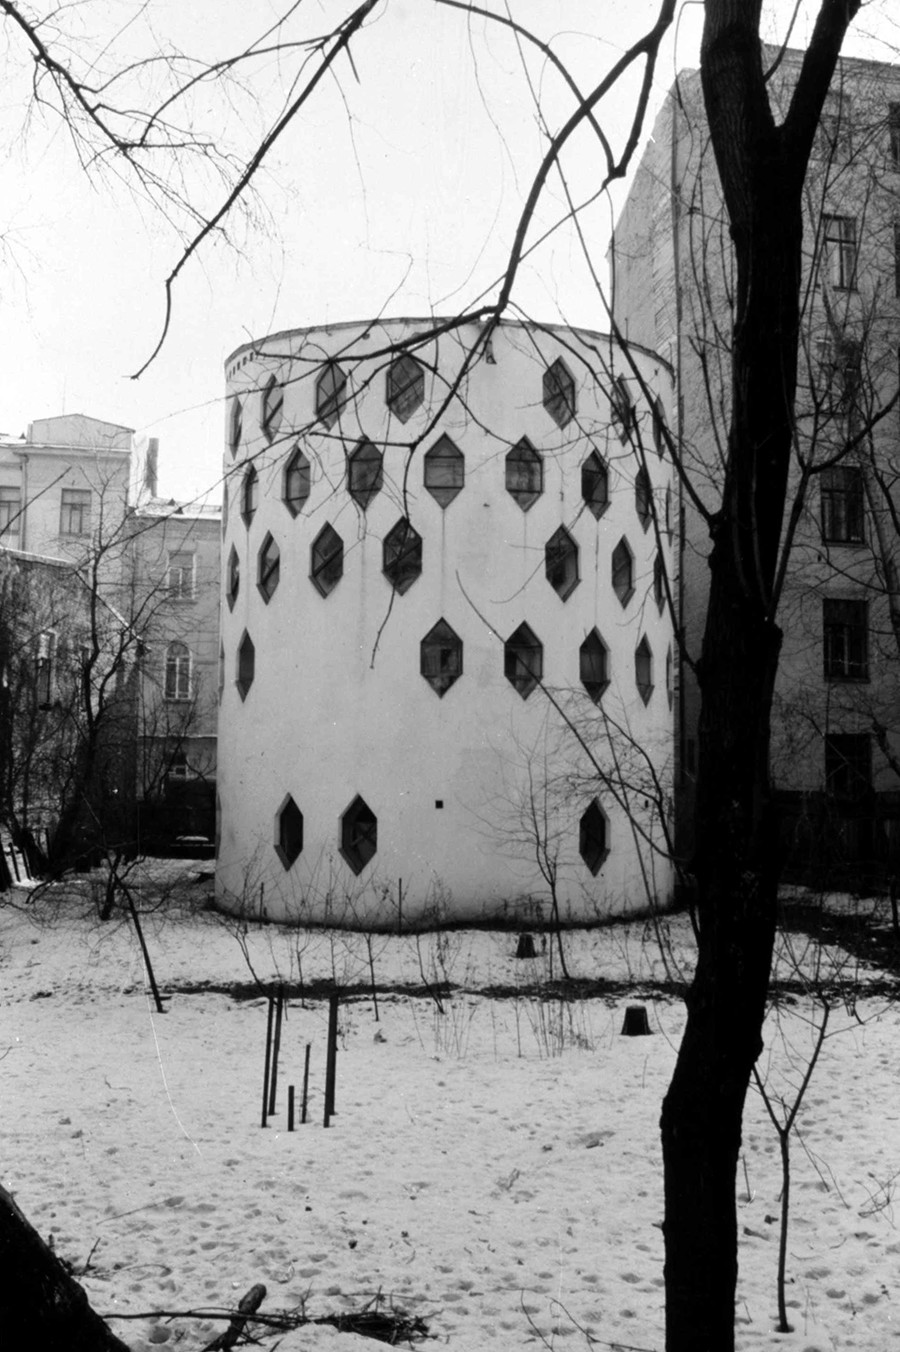 Moskau: Melnikow-Haus (1927), Foto 1984. Hier baute sich der sowjetische Architekt Konstantin Melnikow ein Studio und Einfamilienhaus. Da damals jedes Privateigentum verstaatlicht und Massenwohnblocks errichtet wurden, war das eine Ausnahme.  Das Haus war als Prototyp für spätere Rundbauten gedacht.